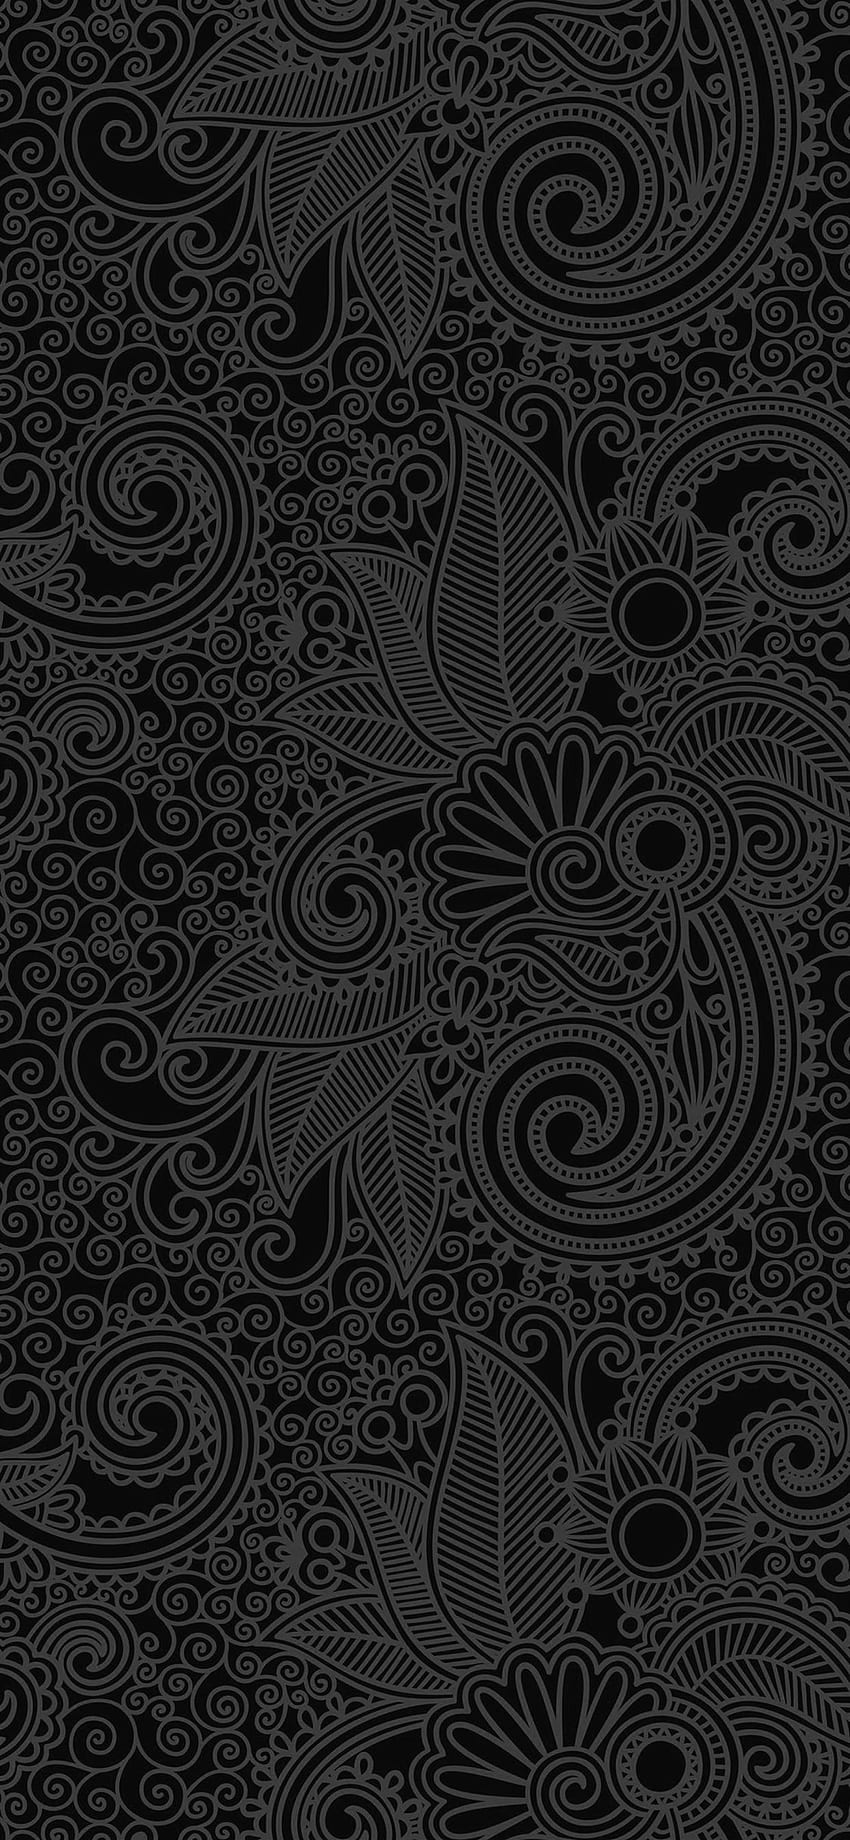 Entwerfen Sie Blumenlinie dunkles Muster iPhone X, schwarzes Muster iPhone HD-Handy-Hintergrundbild